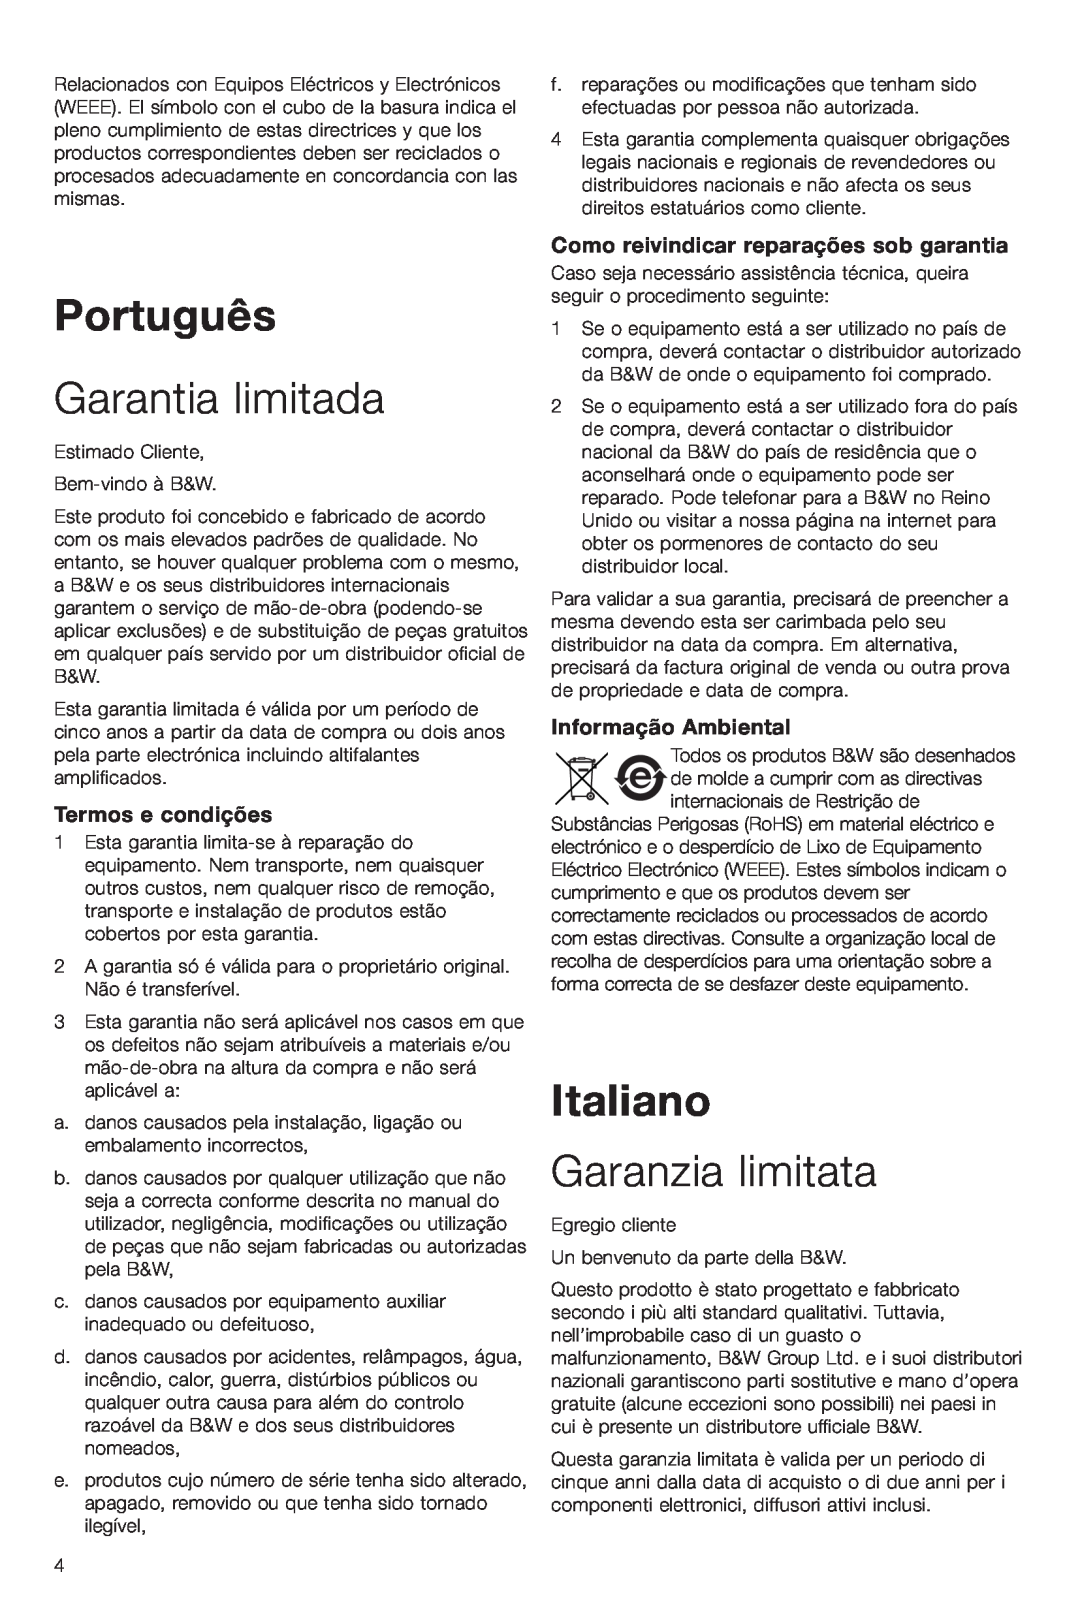 Bowers & Wilkins VM6 Português, Garantia limitada, Italiano, Garanzia limitata, Termos e condições, Informação Ambiental 